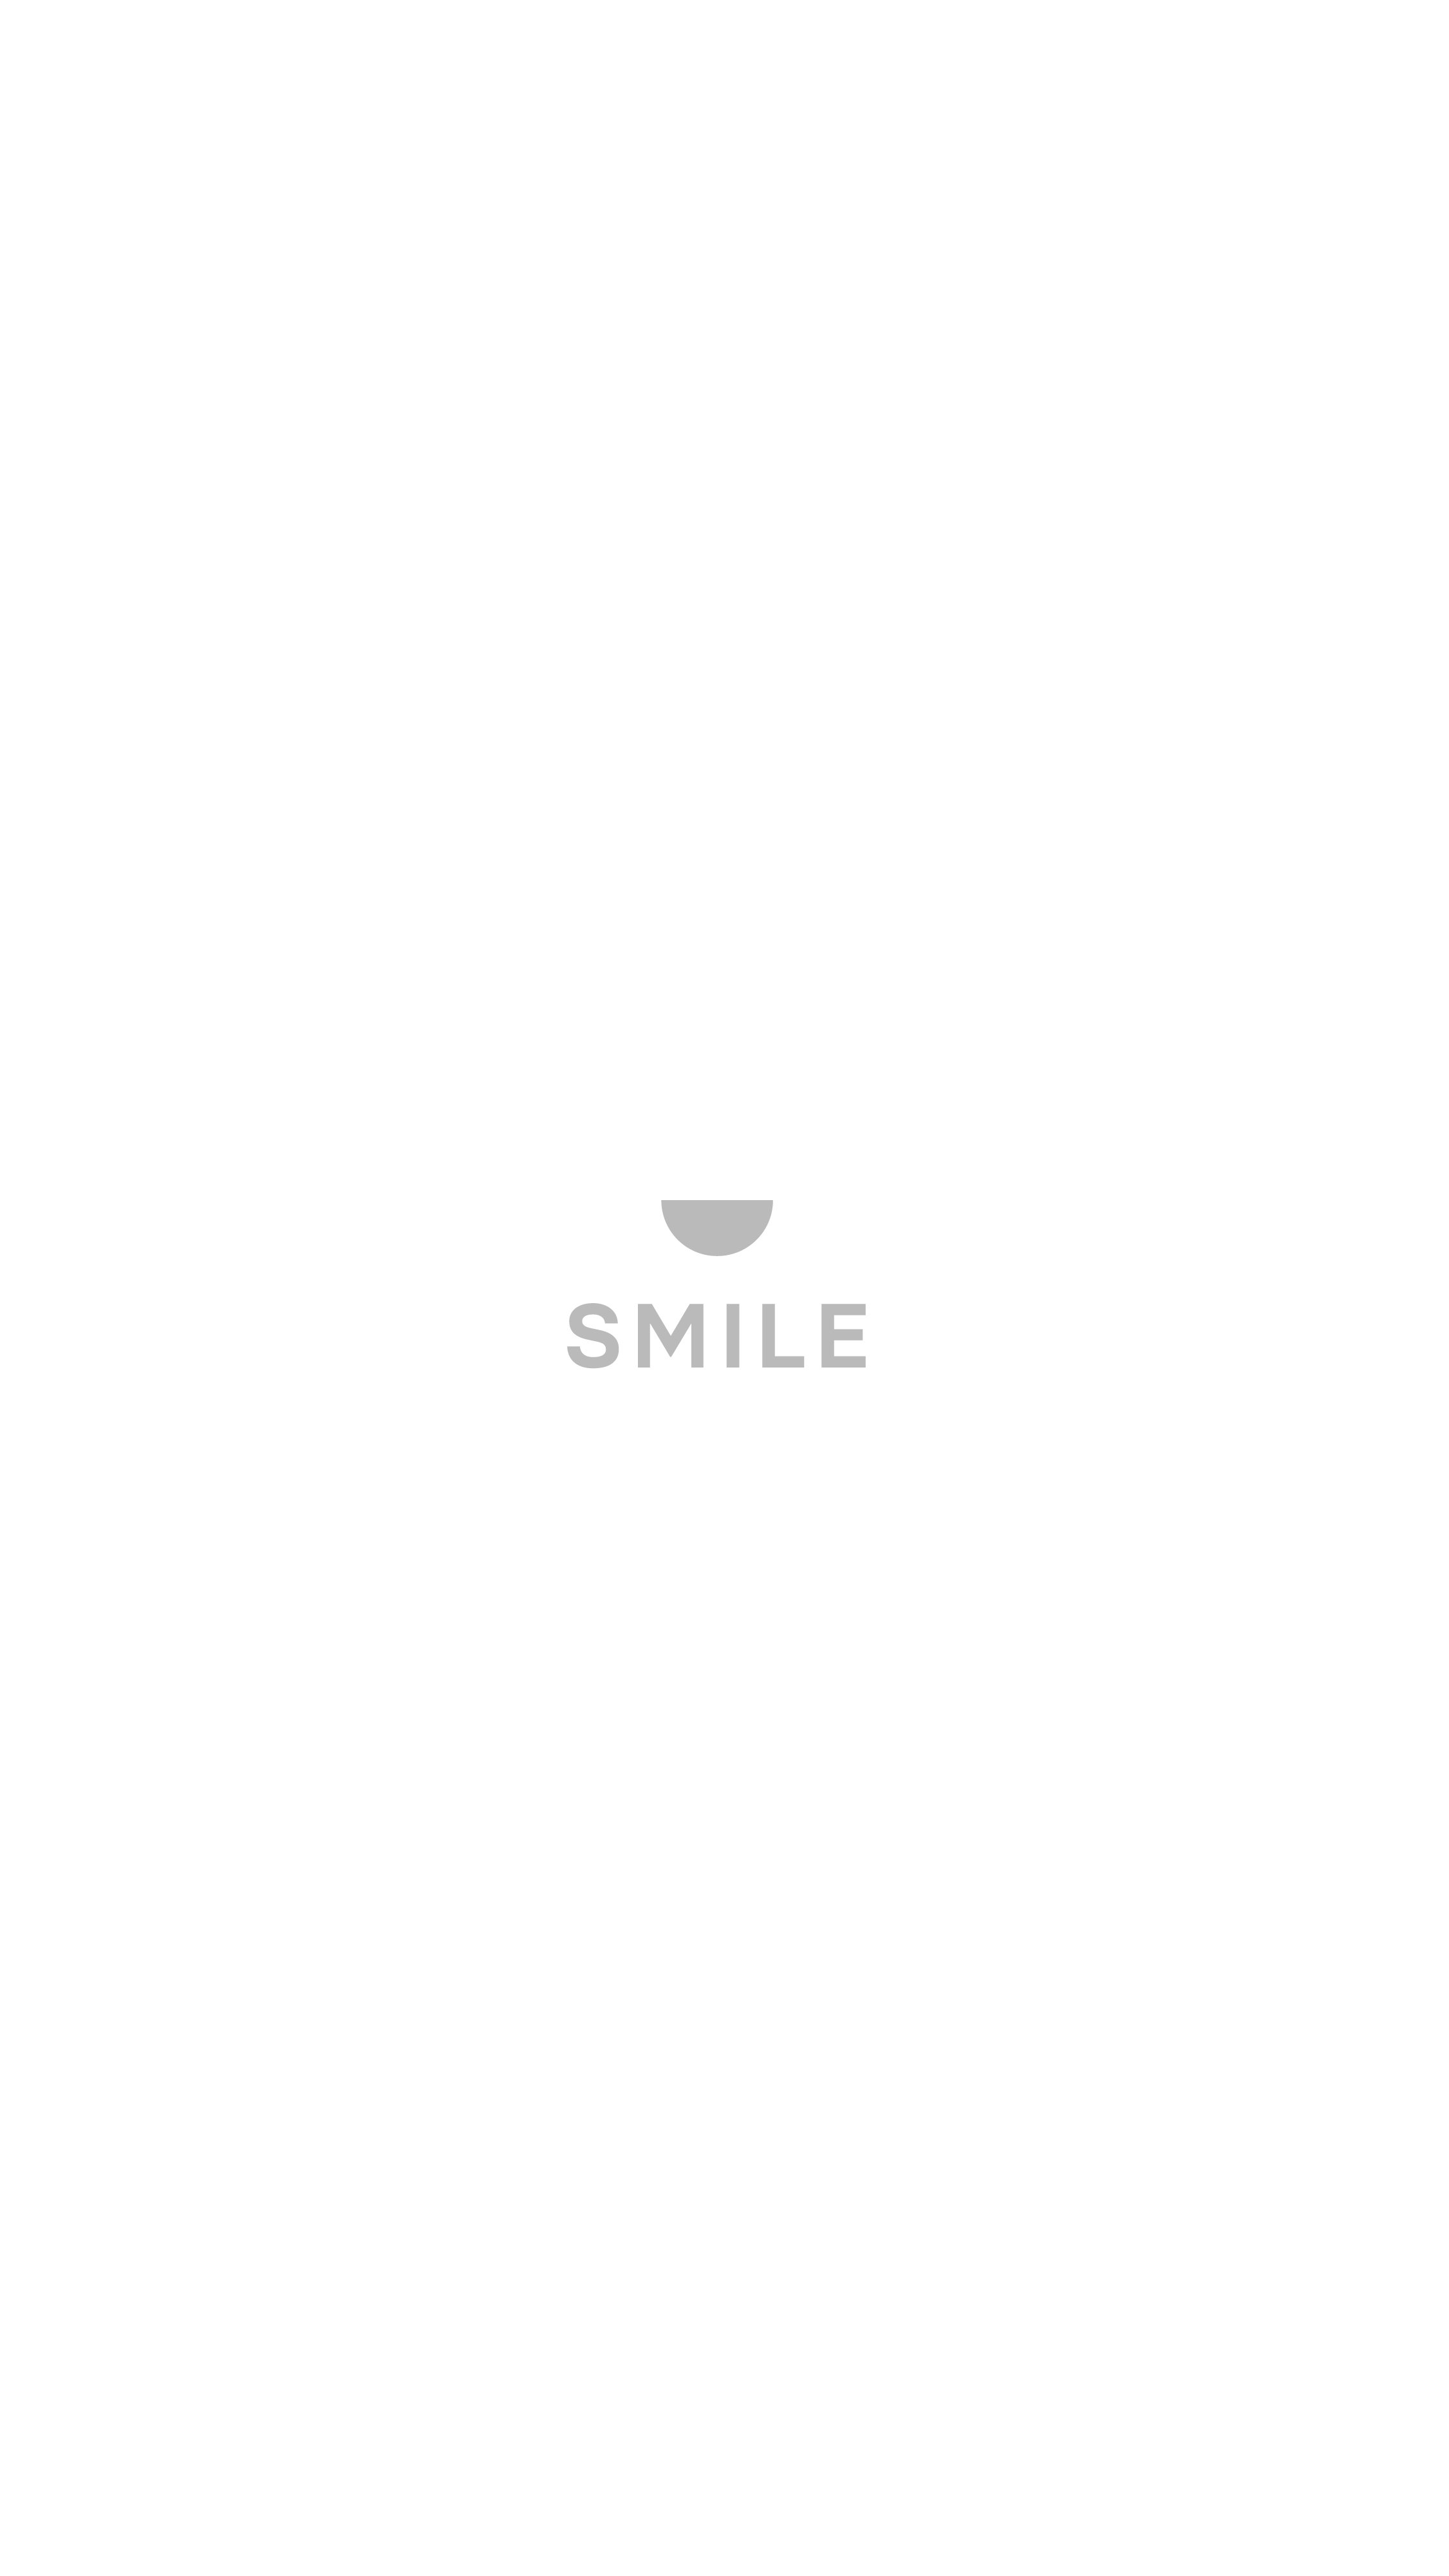 SS-Insider-Smile-Stories-06.jpg